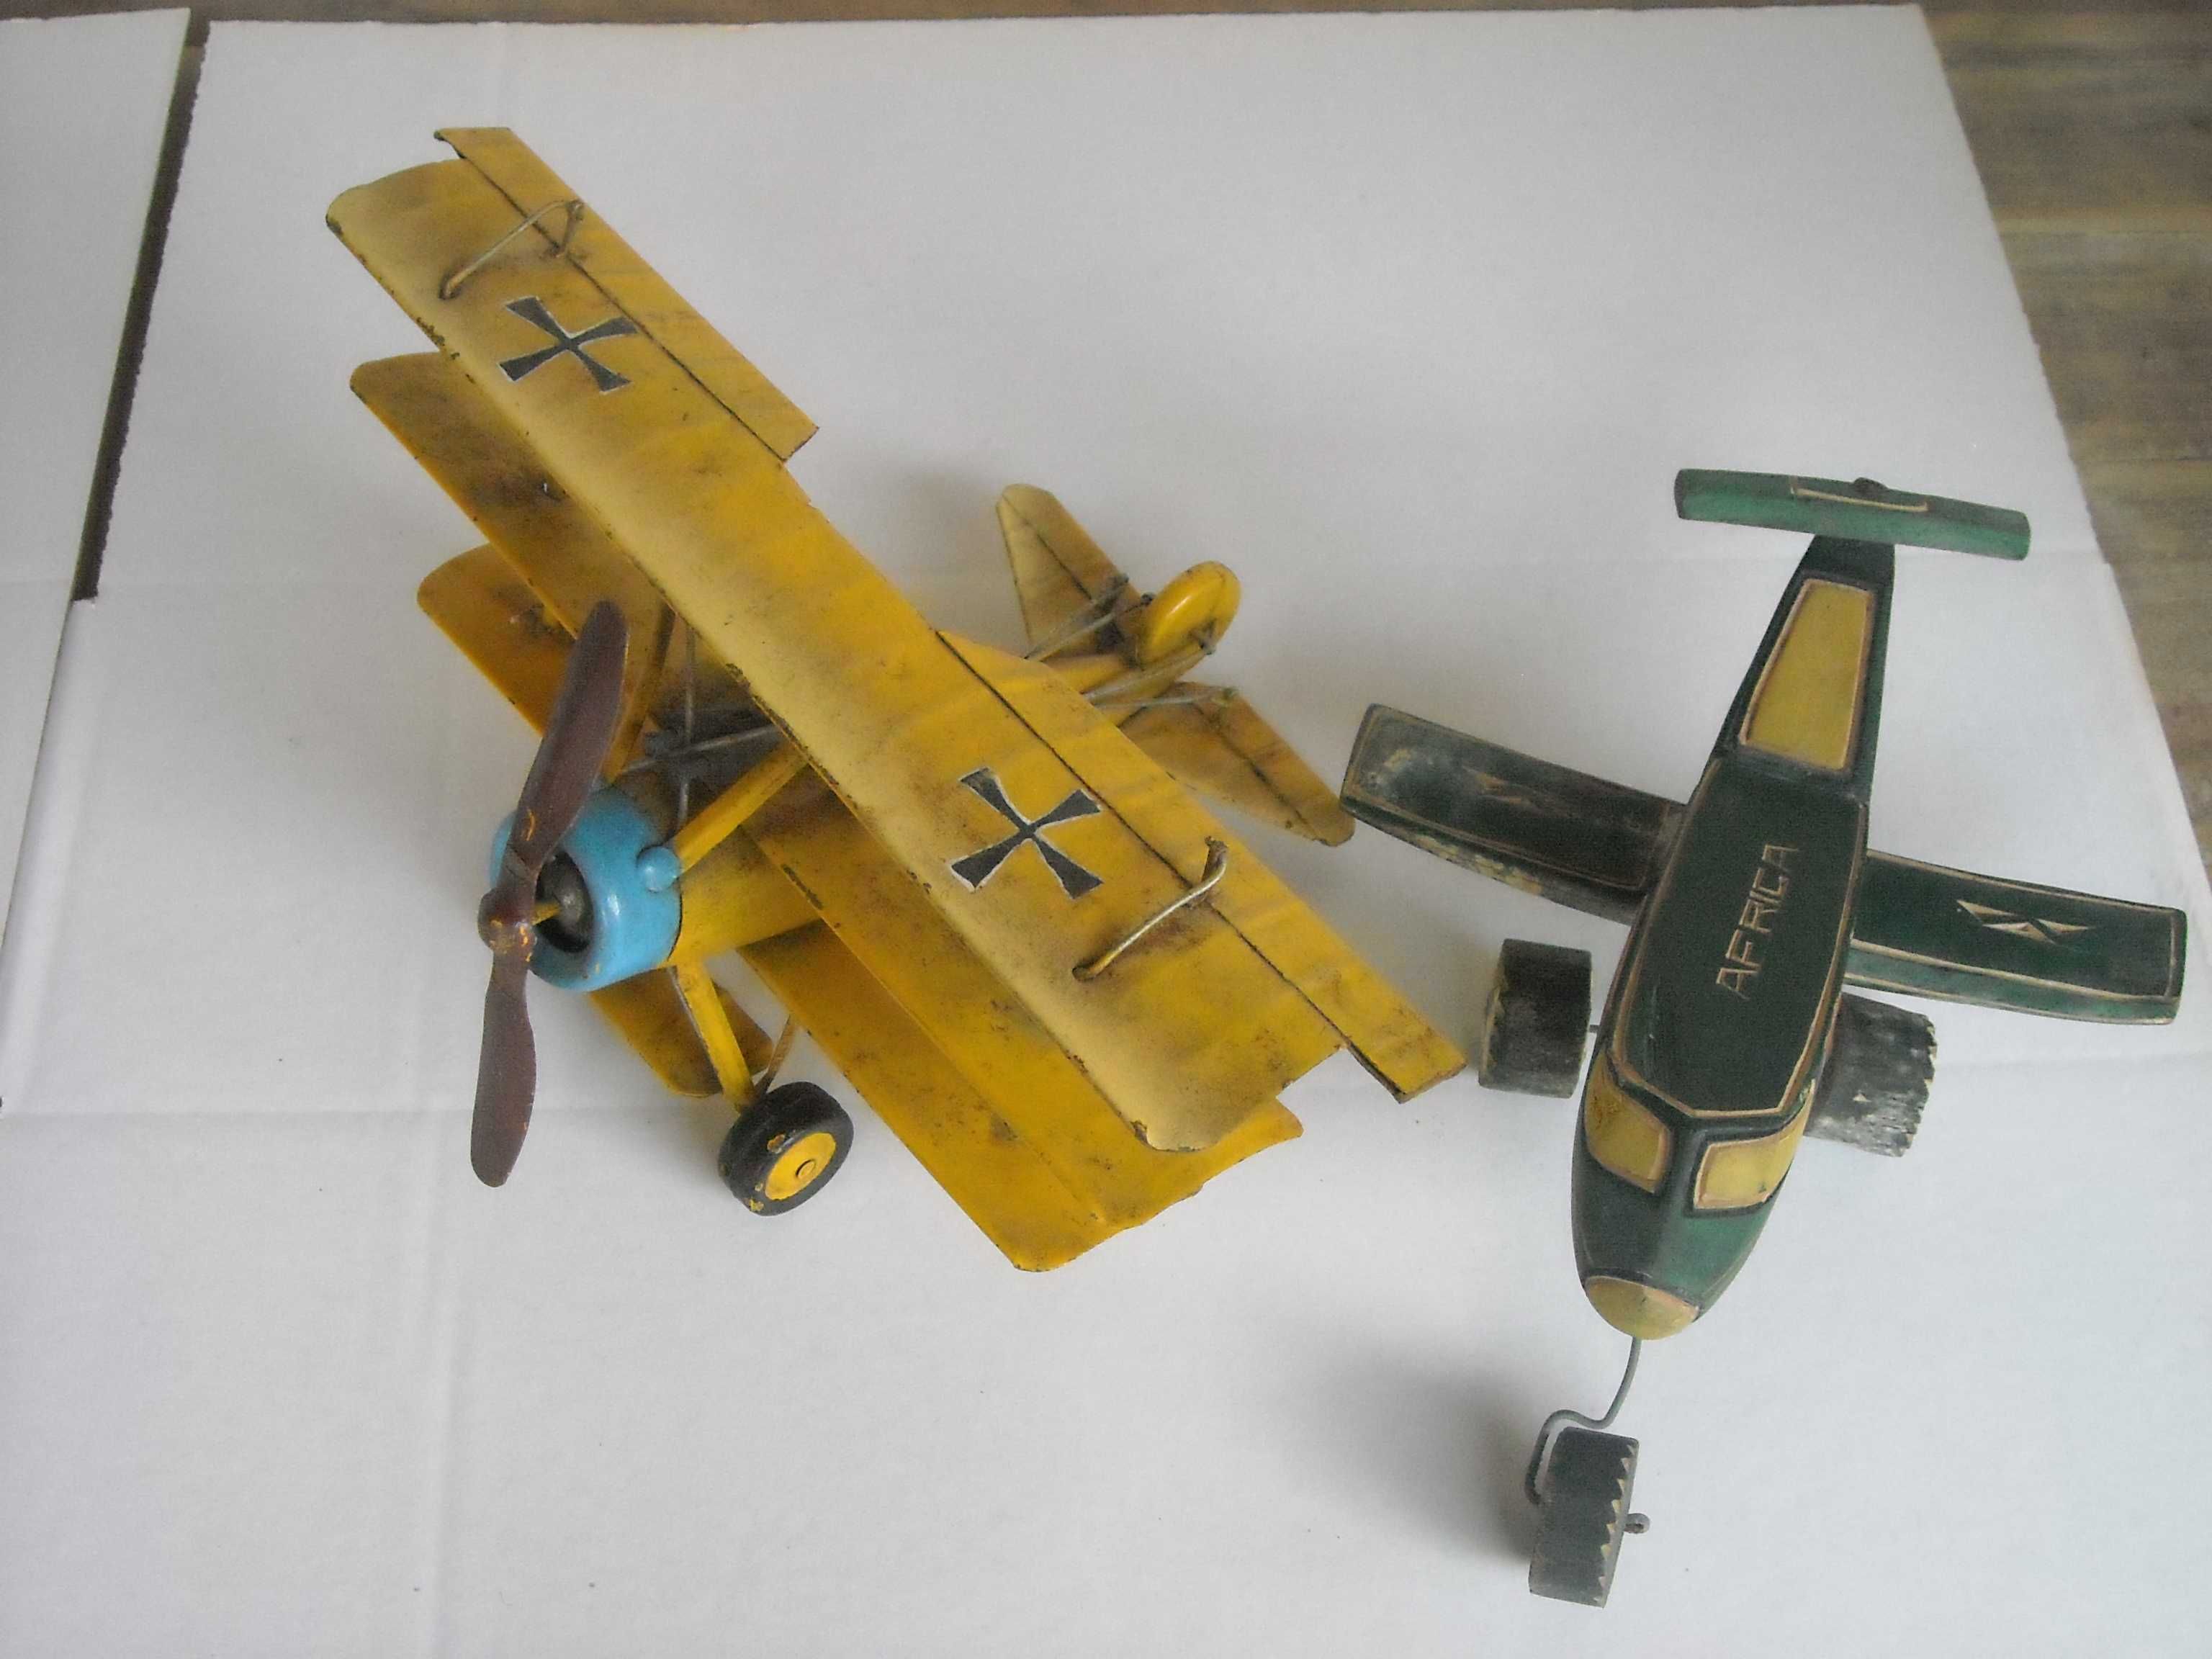 Brinquedos antigos aviao lata e madeira